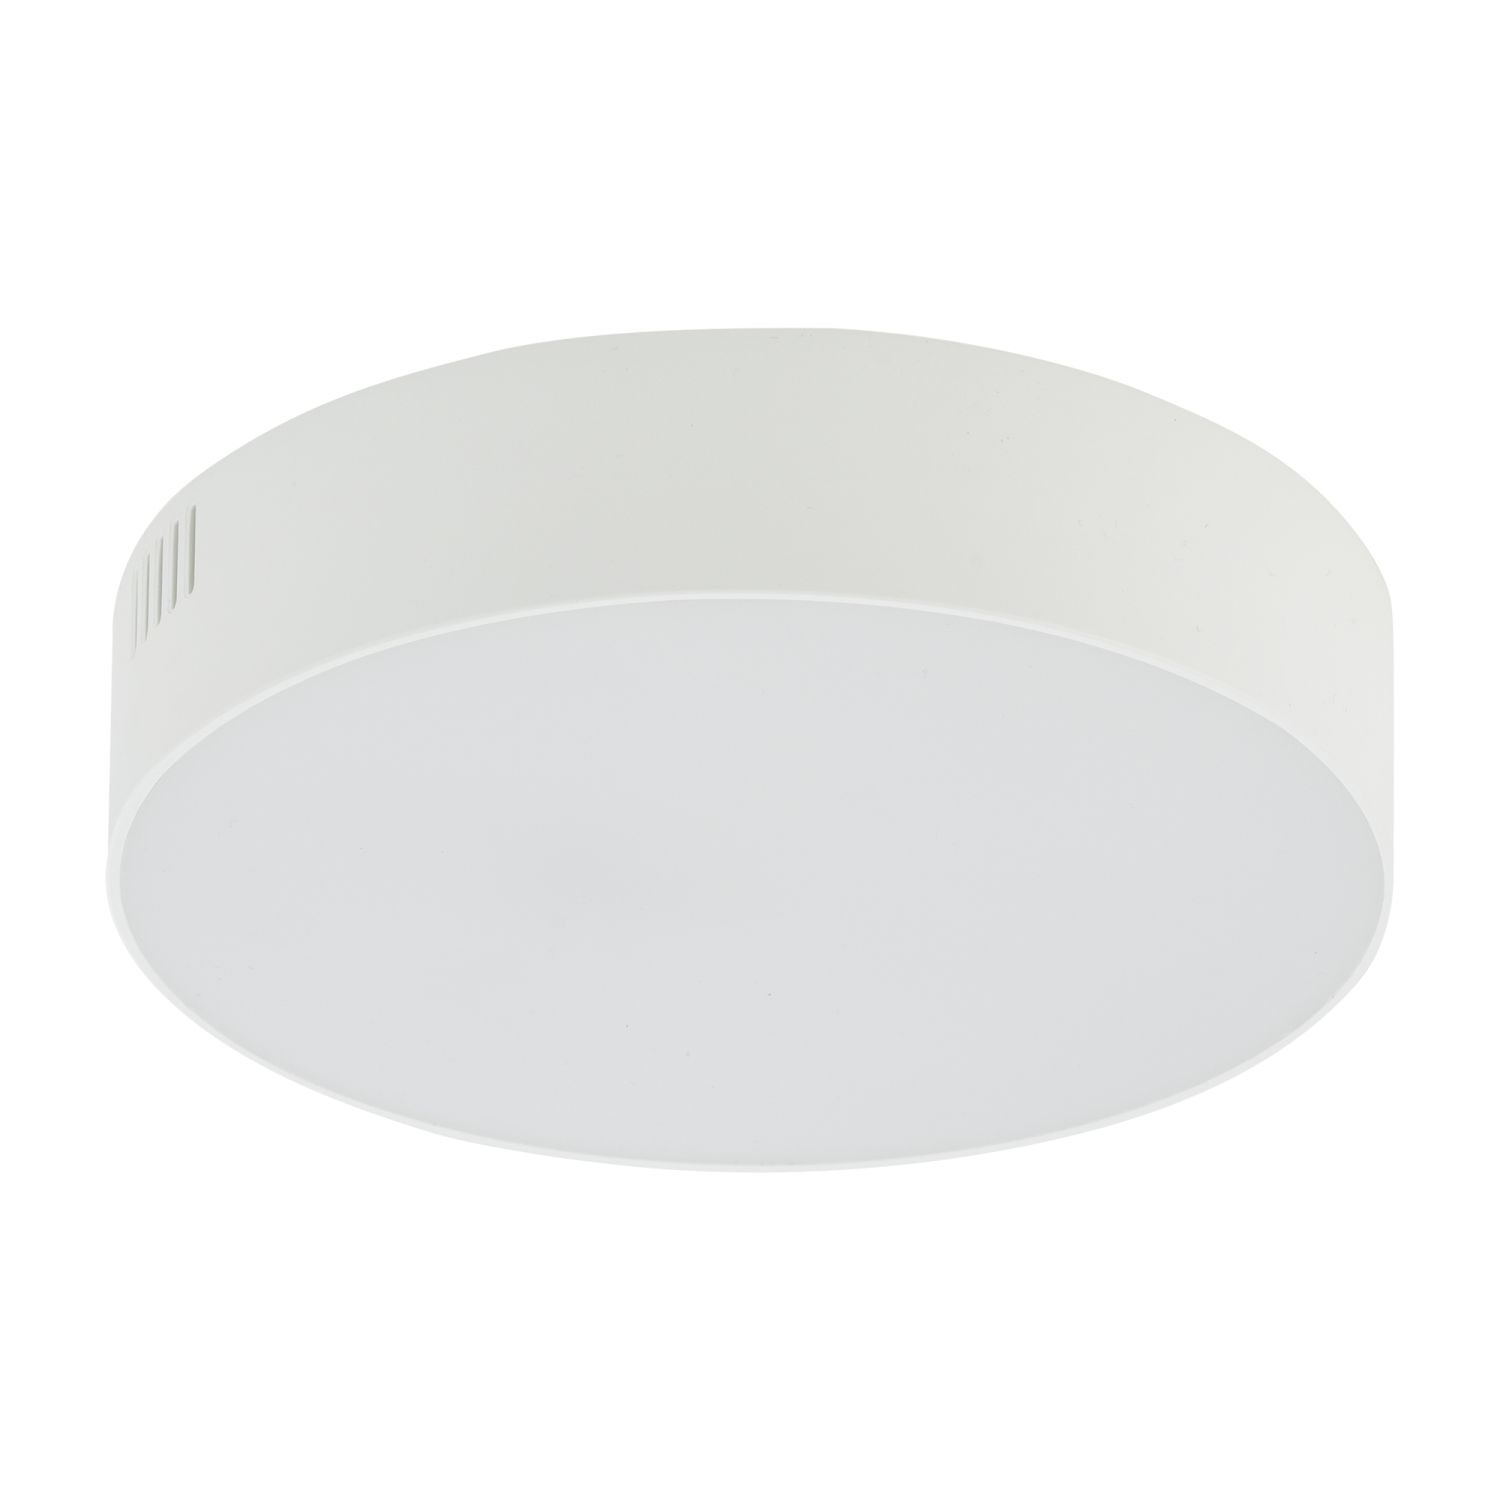 Deckenlampe LED Ø 16 cm Weiß rund blendarm warm 3000 K